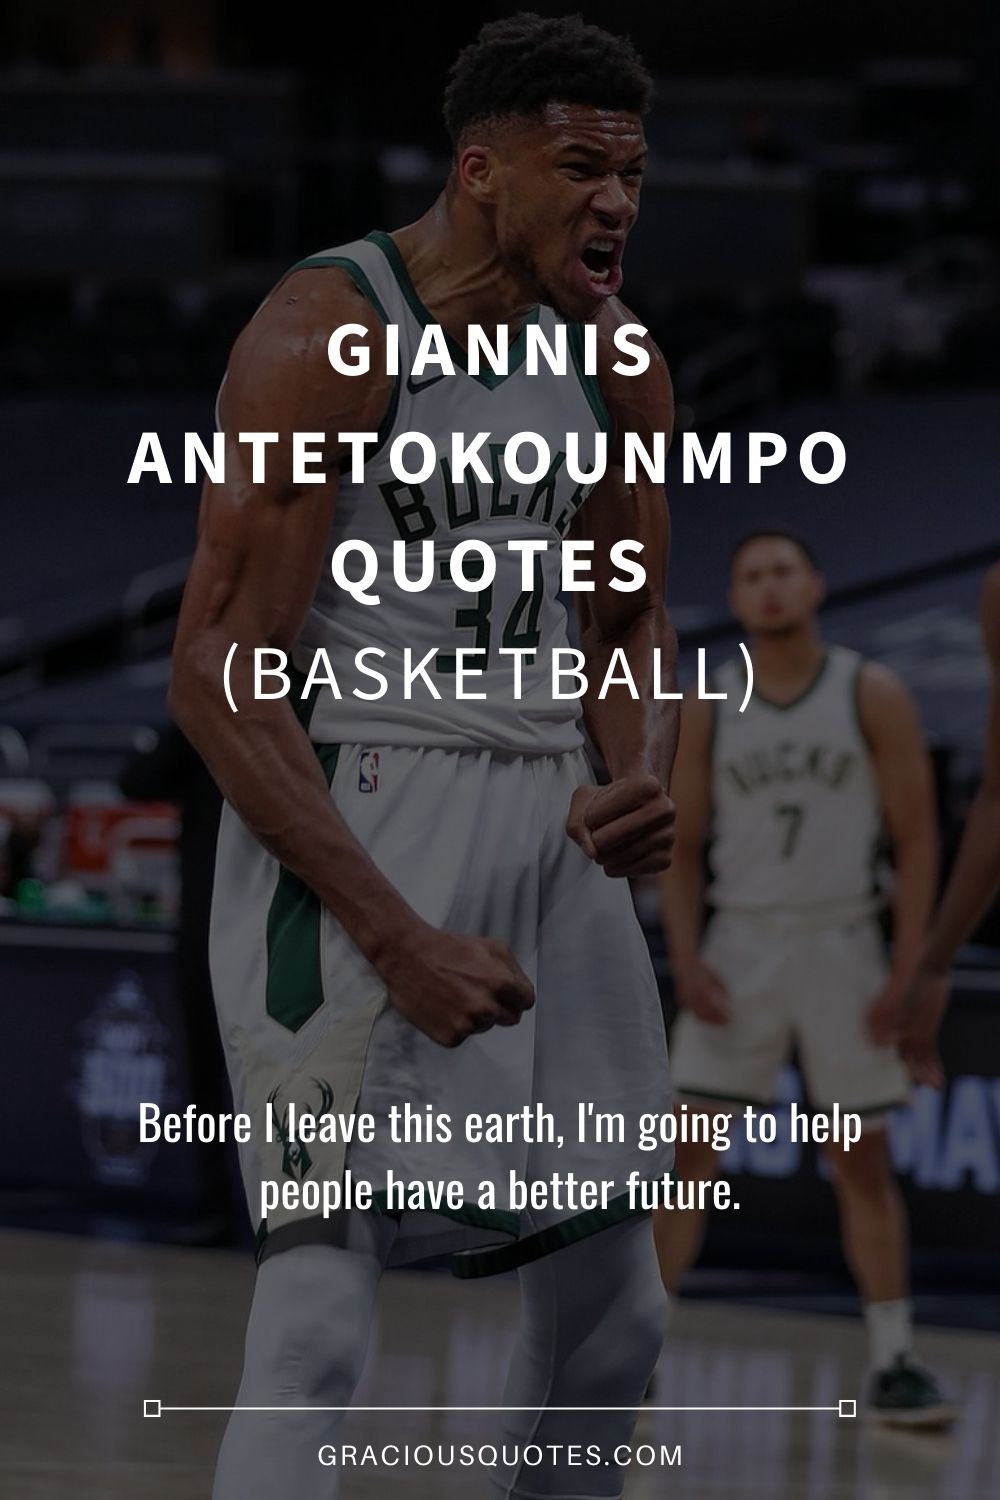 Giannis Antetokounmpo Quotes (BASKETBALL) - Gracious Quotes